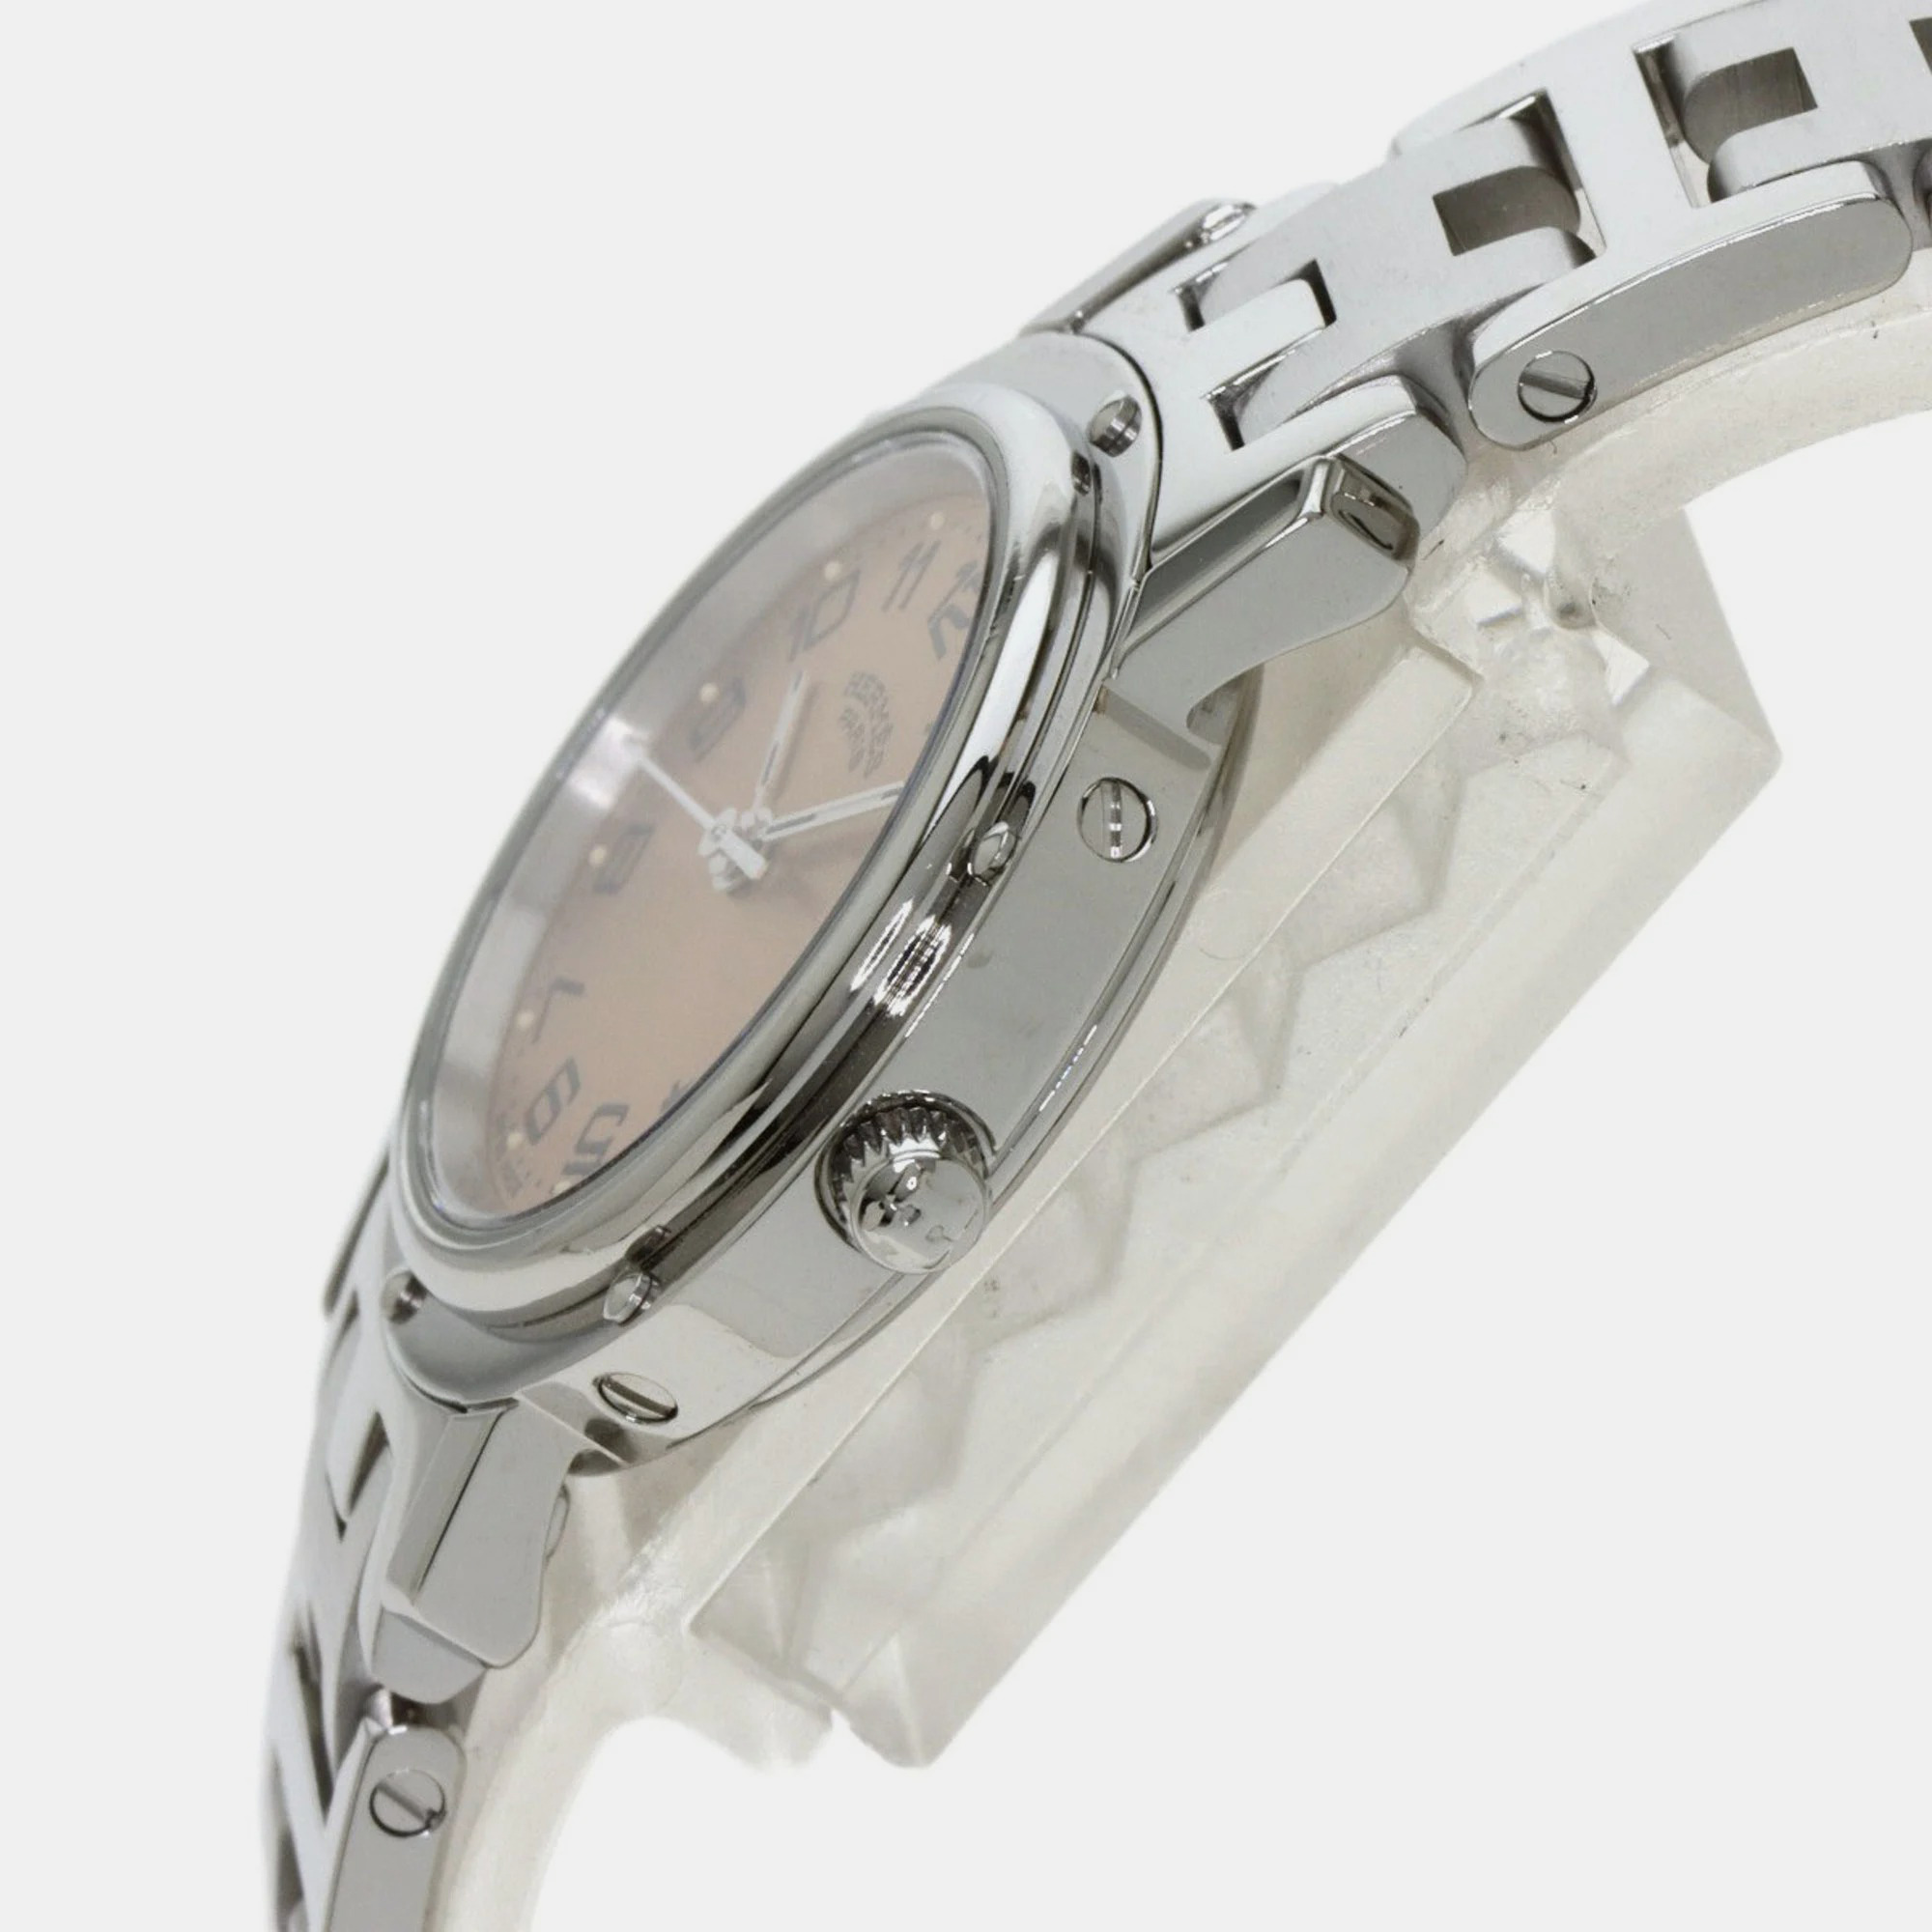 Hermes Pink Stainless Steel Clipper CL4.210 Quartz Women's Wristwatch 24 Mm